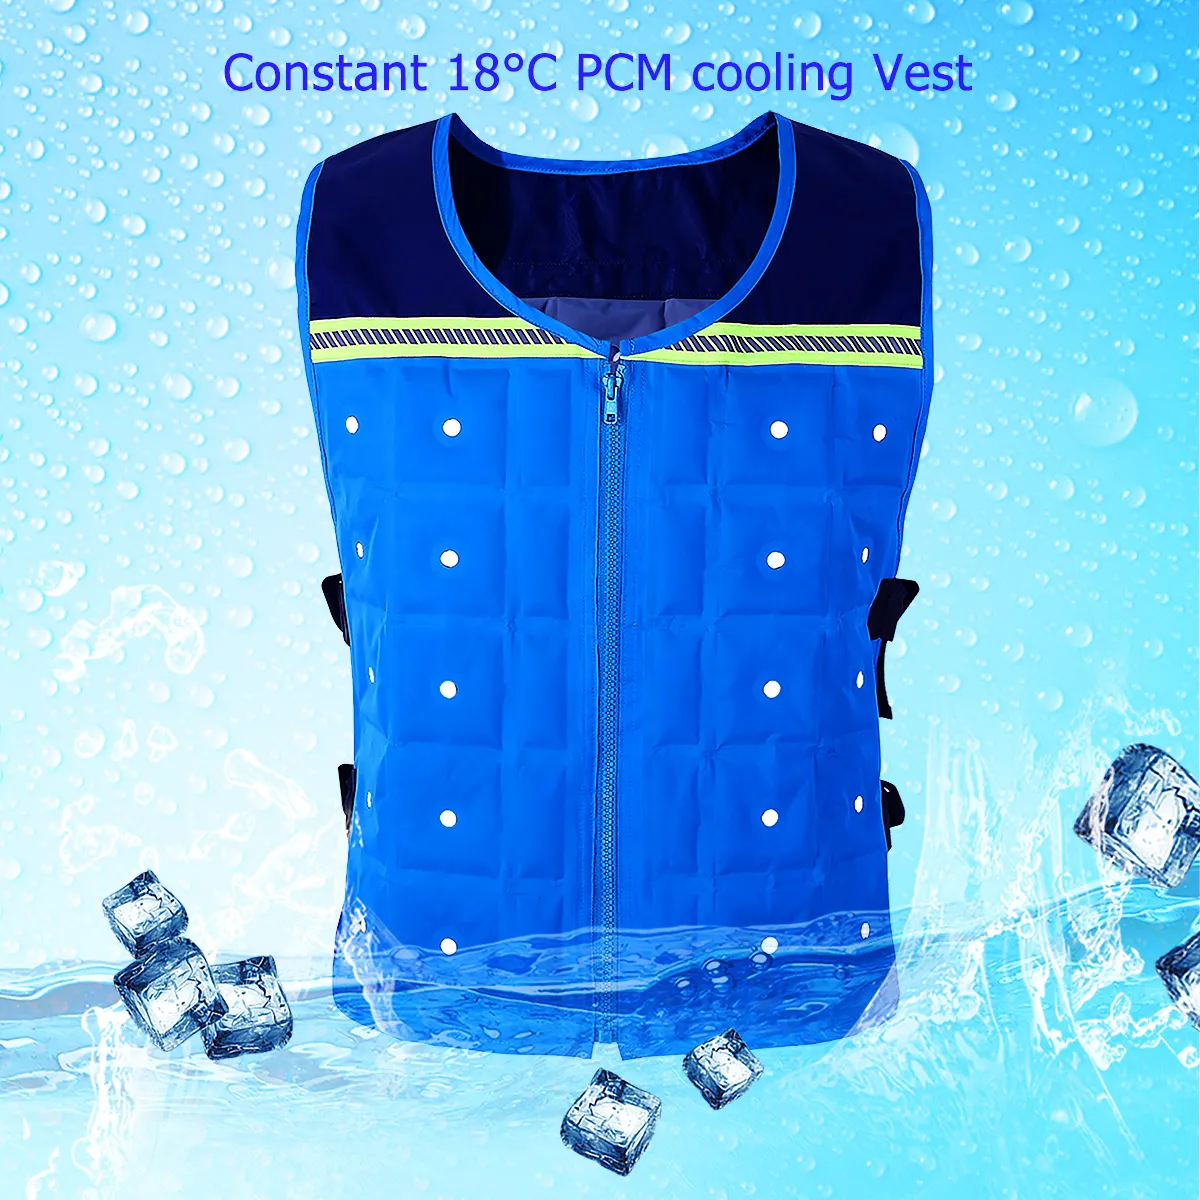 Yeni Patent 22 santigrat sıcaklık PCM soğutma giyim açık inşaat yelek yaz üniforma yelek inşaatı